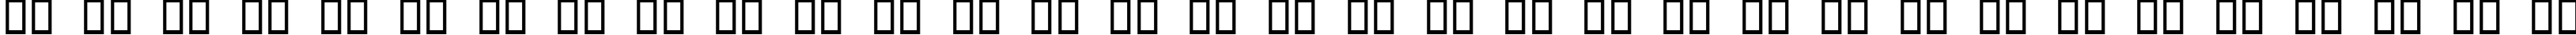 Пример написания русского алфавита шрифтом Obtuse One